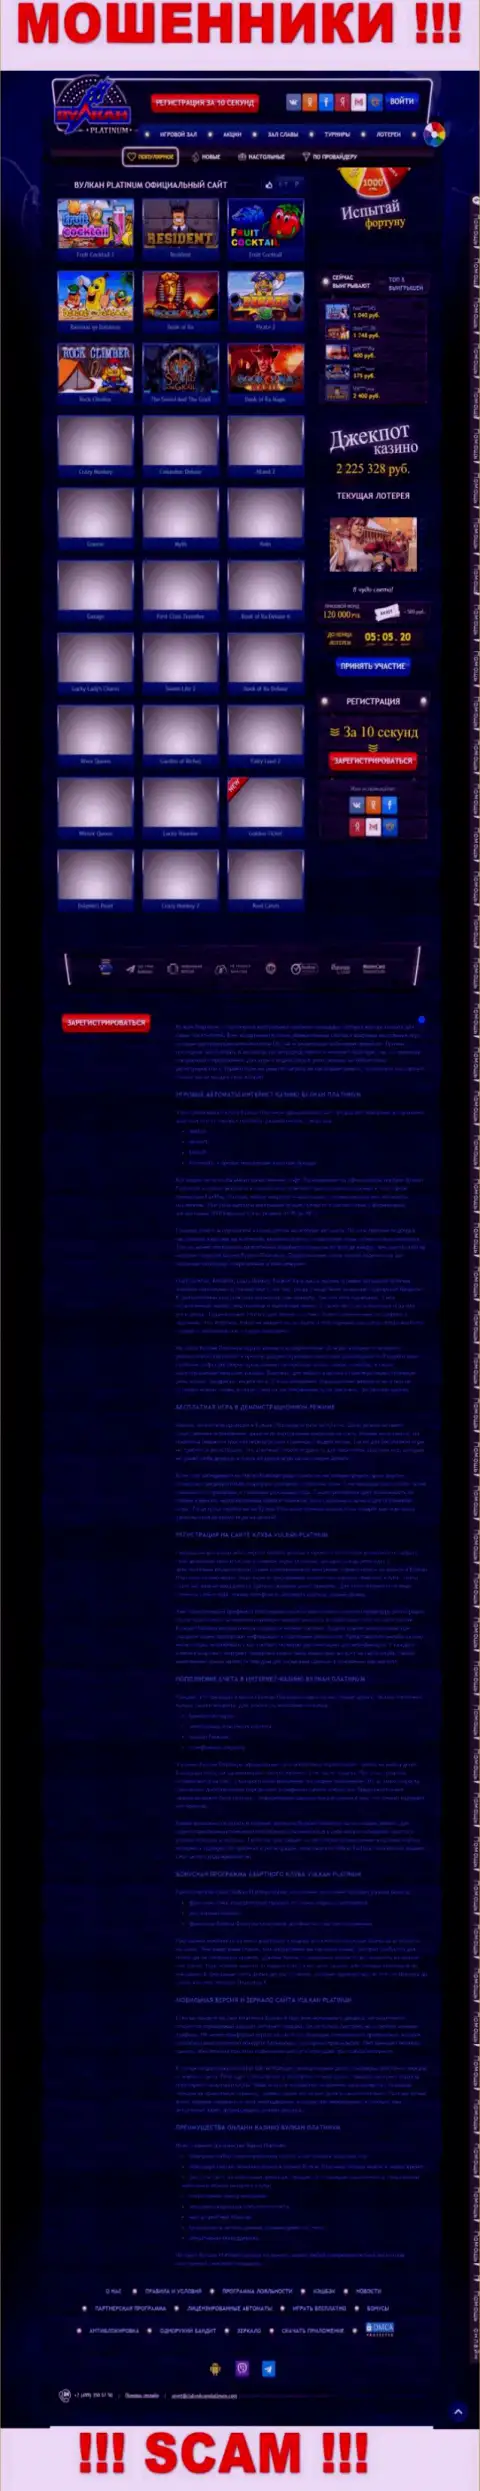 Скрин официального интернет-портала ВулканПлатинум - КлабВулканПлатинум Ком